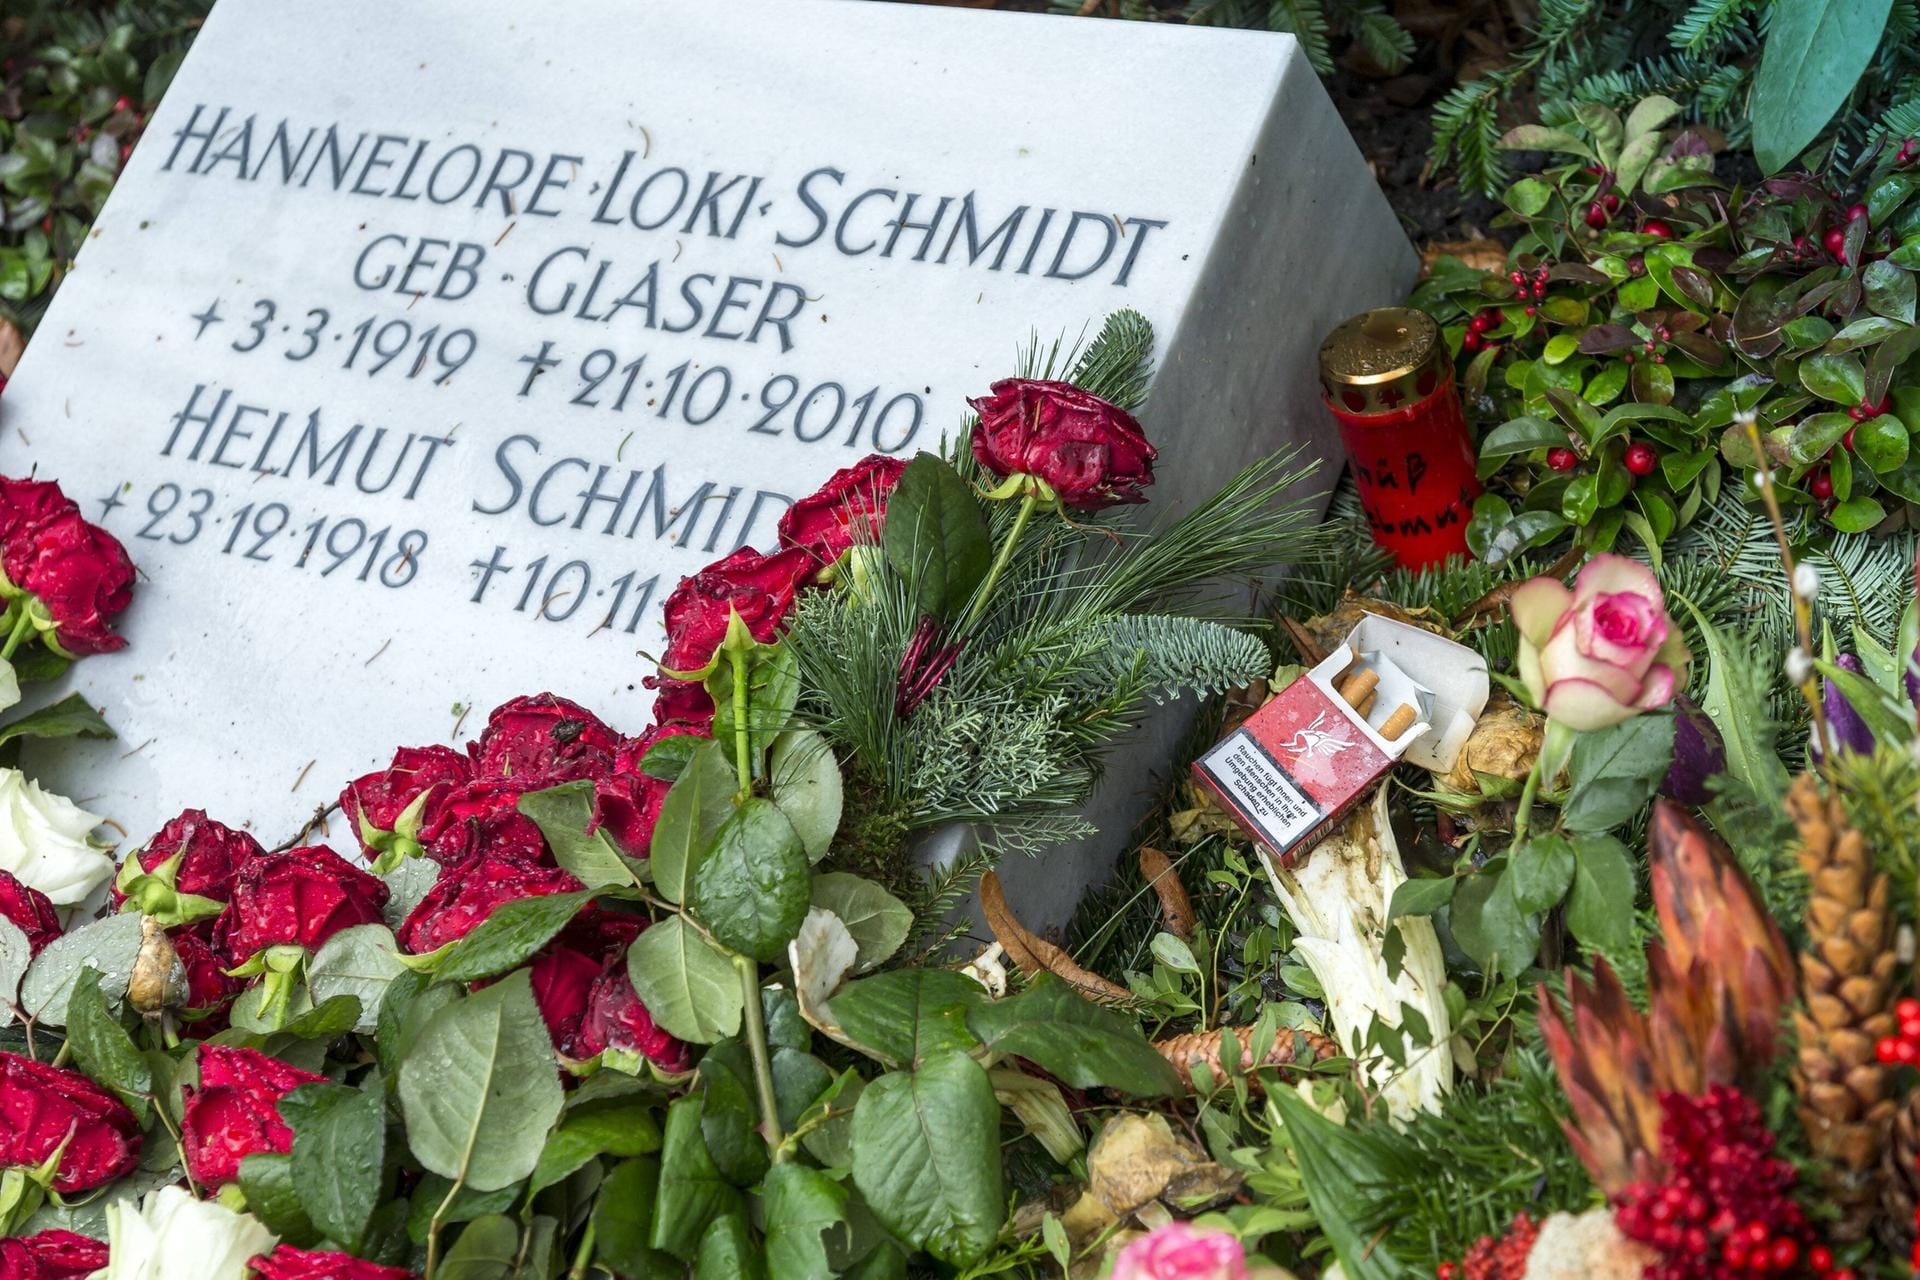 Am 10. November 2015 verstarb auch Helmut Schmidt in Hamburg-Langenhorn. Er wurde neben seiner Frau beigesetzt.